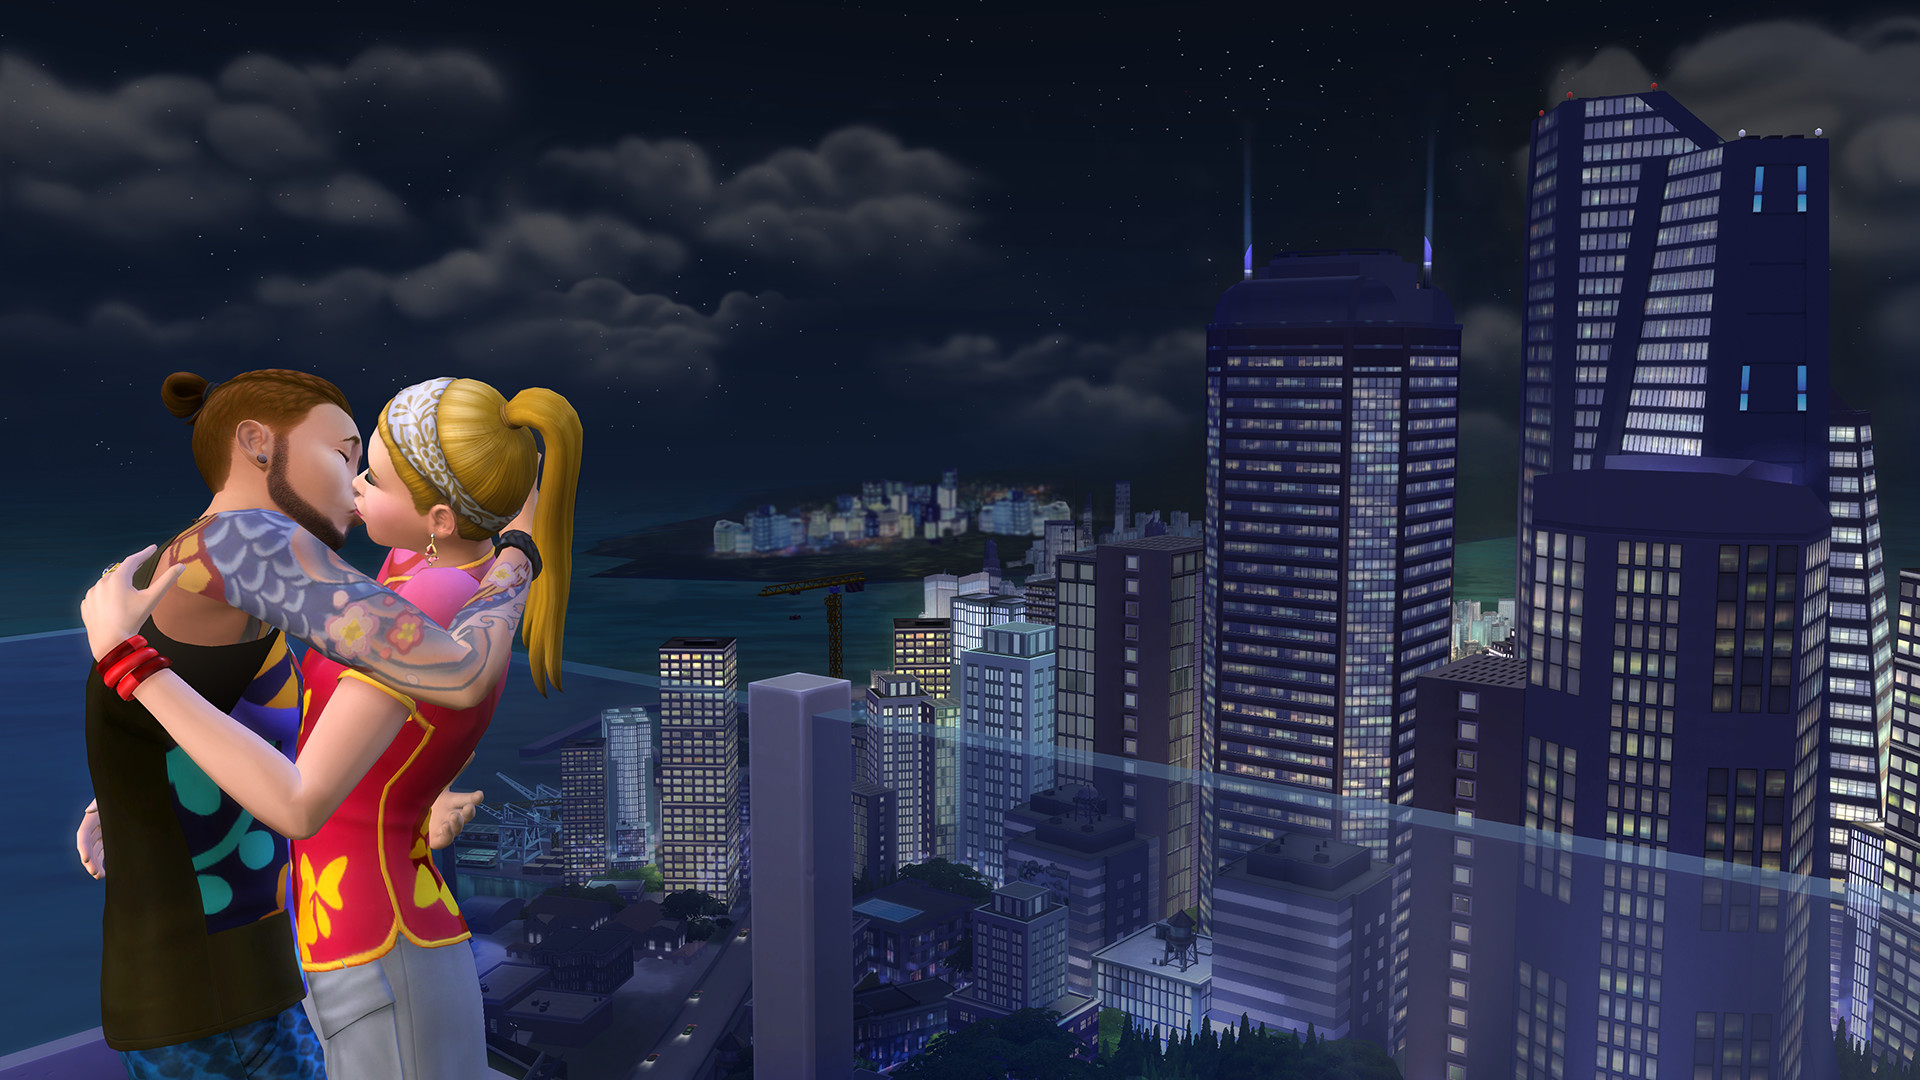 模拟人生4 资料片 都会生活 The Sims 4 City Living Indienova Gamedb 游戏库